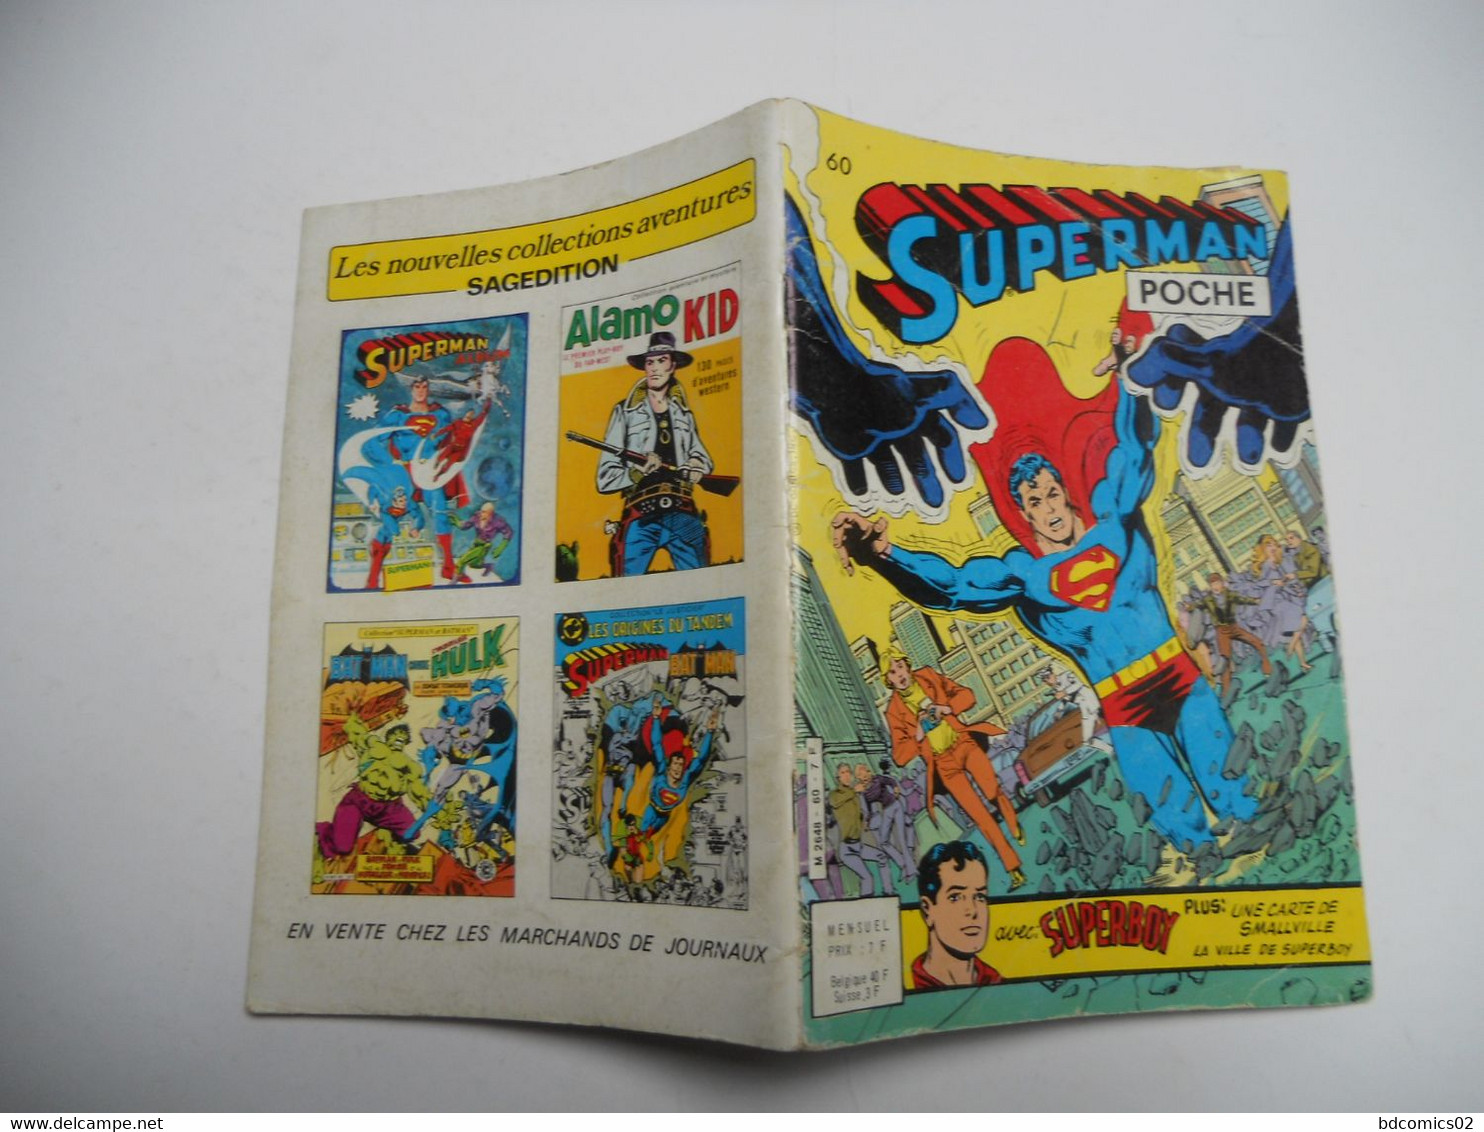 SUPERMAN POCHE N°60 SAGÉDITION 1982 - Superman